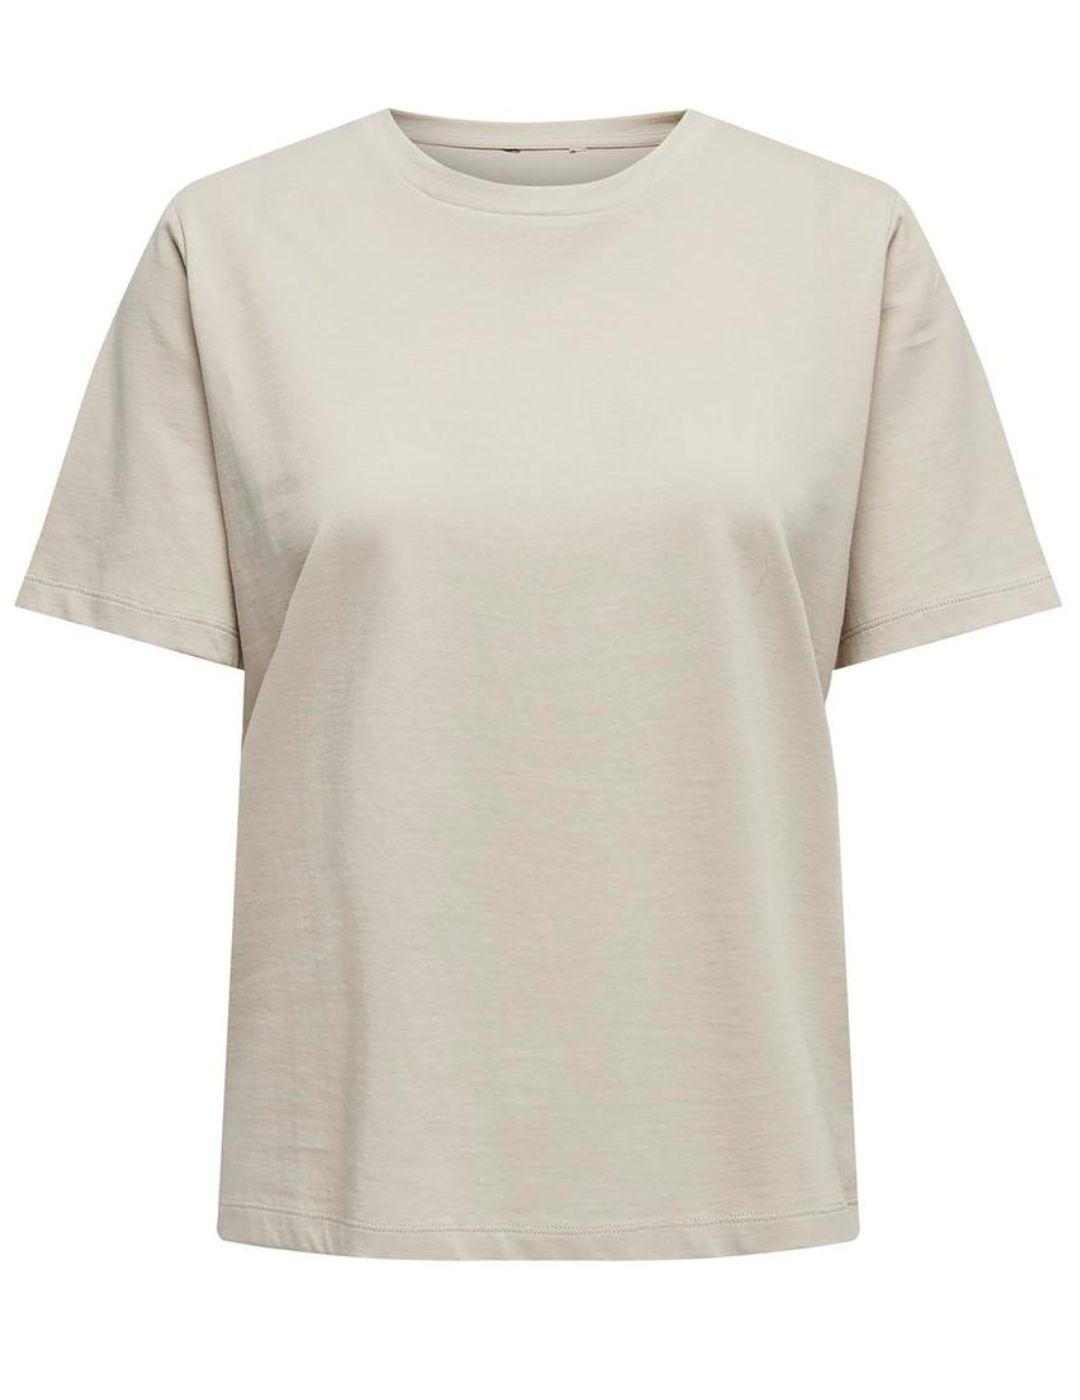 Camiseta Only Lonly beige manga corta para mujer